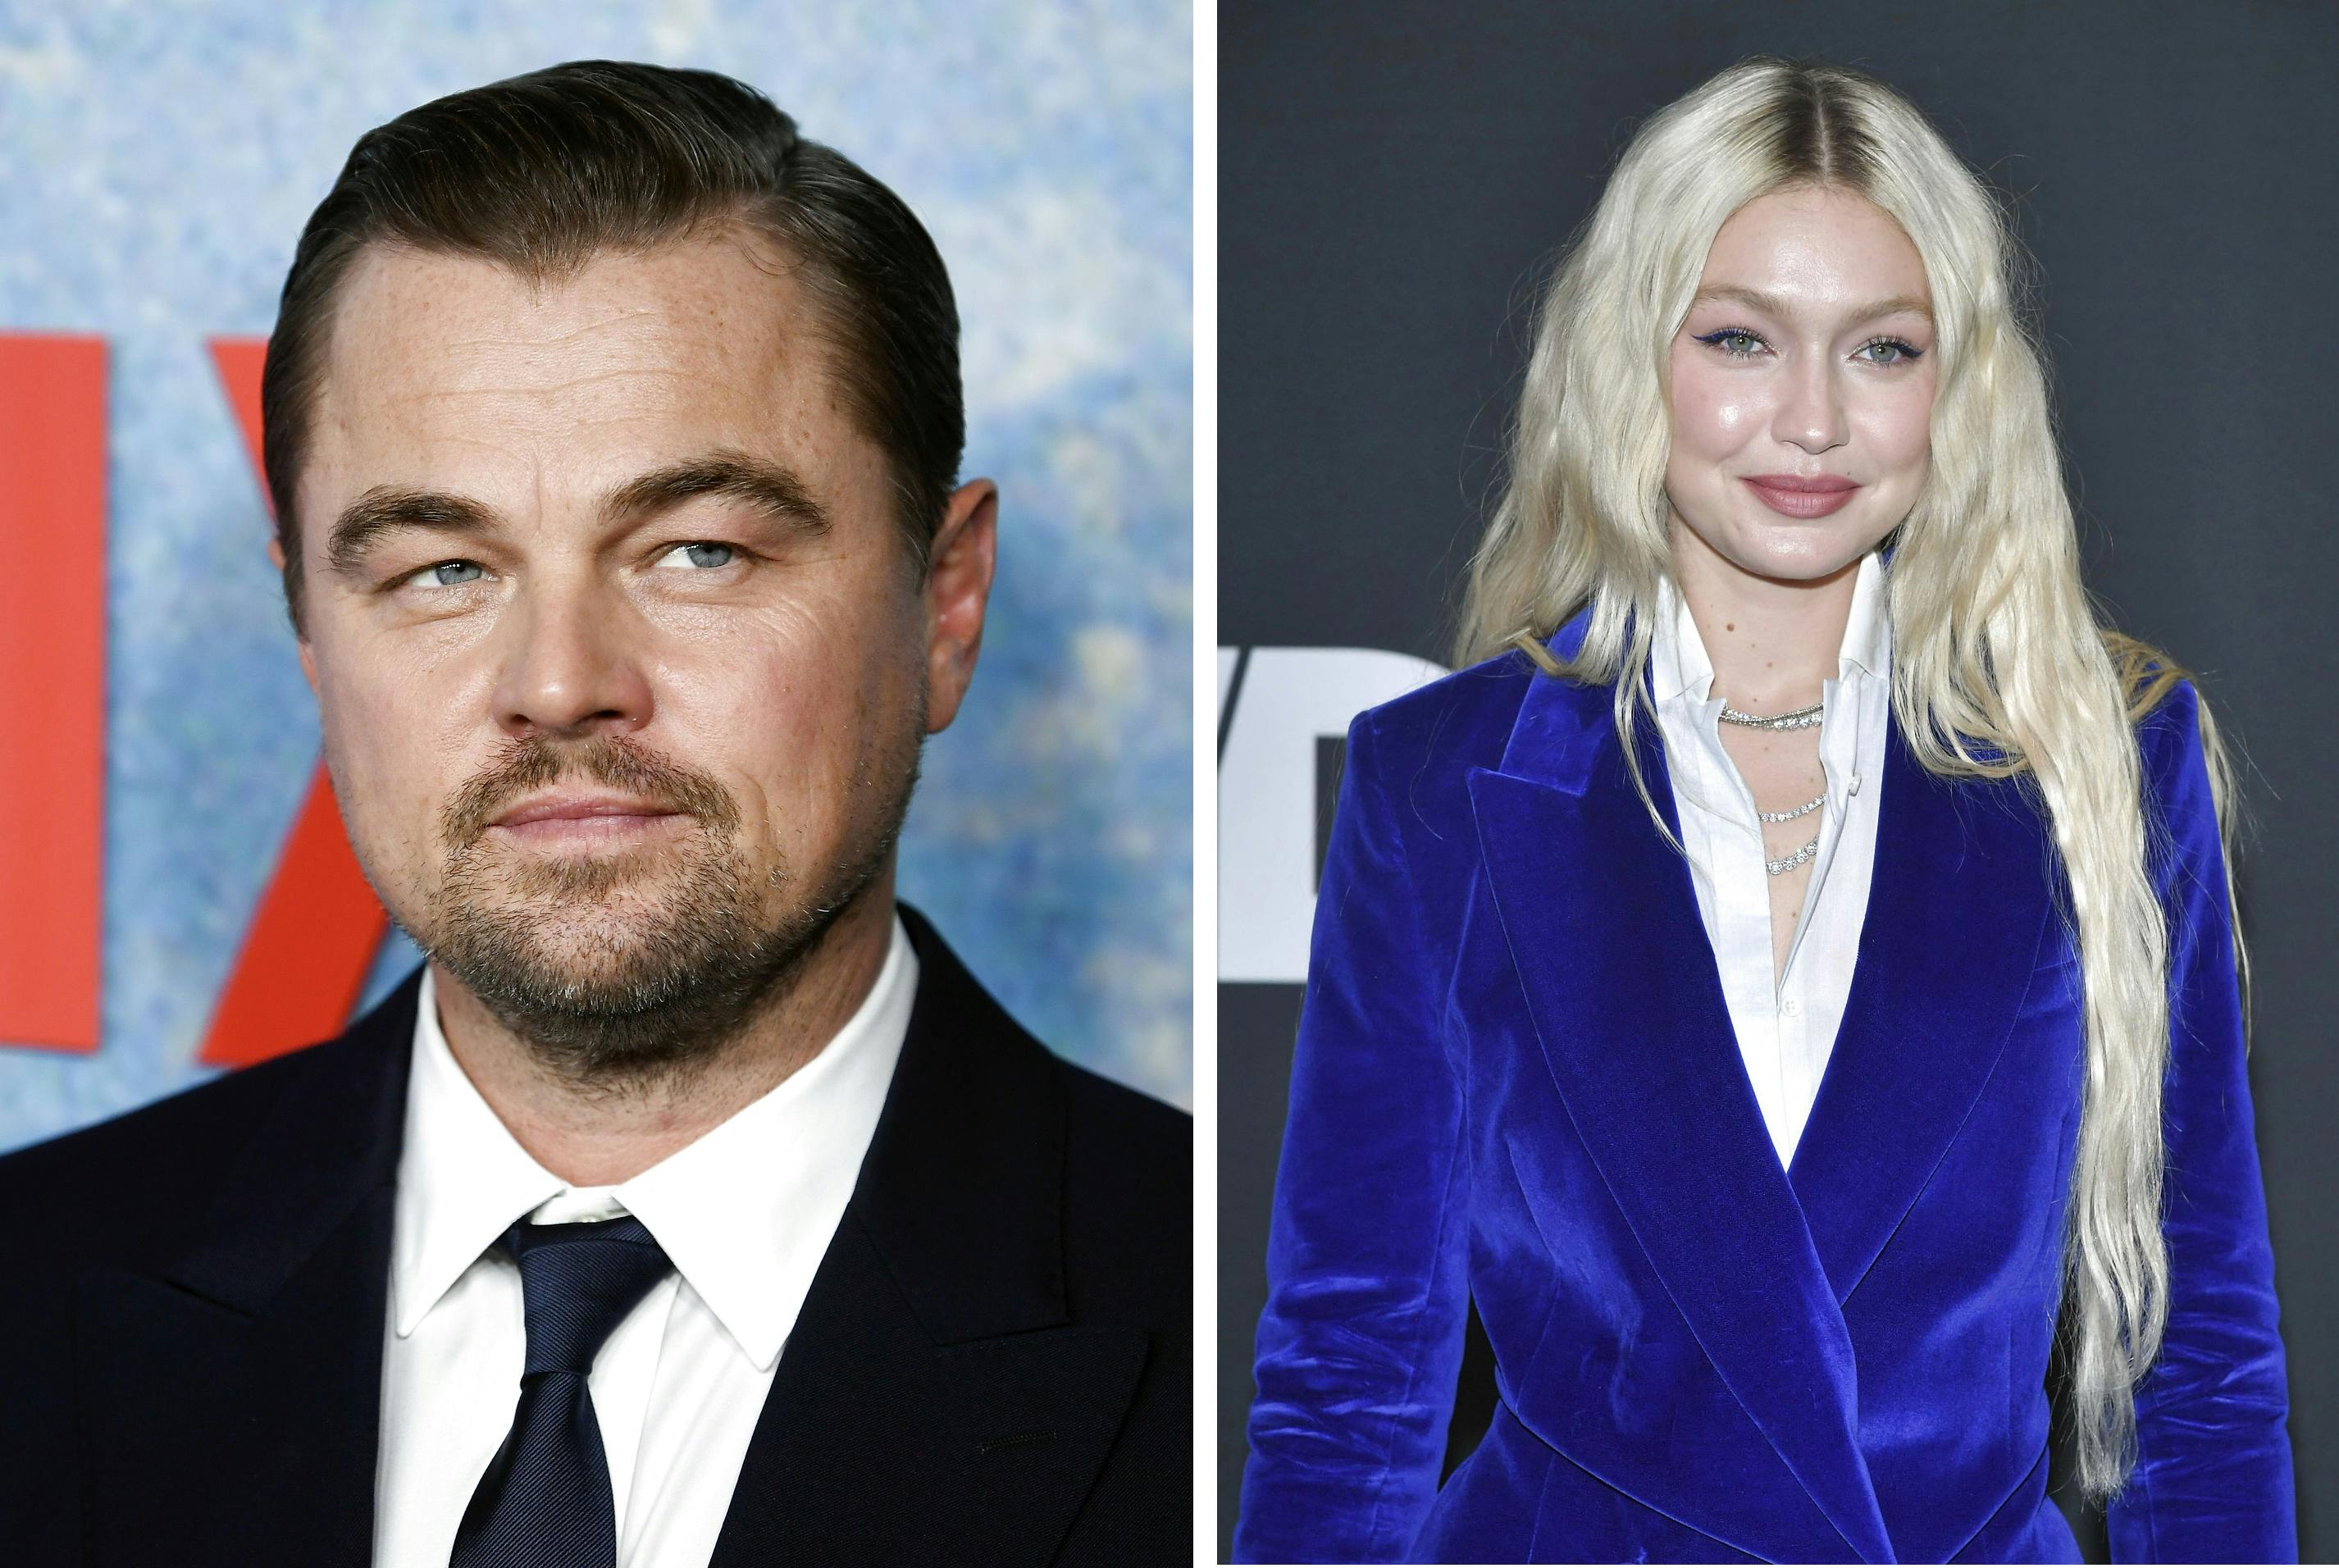 Leonardo DiCaprio og Gigi Hadid blev spottet efter romantisk middag i New York i weekenden.